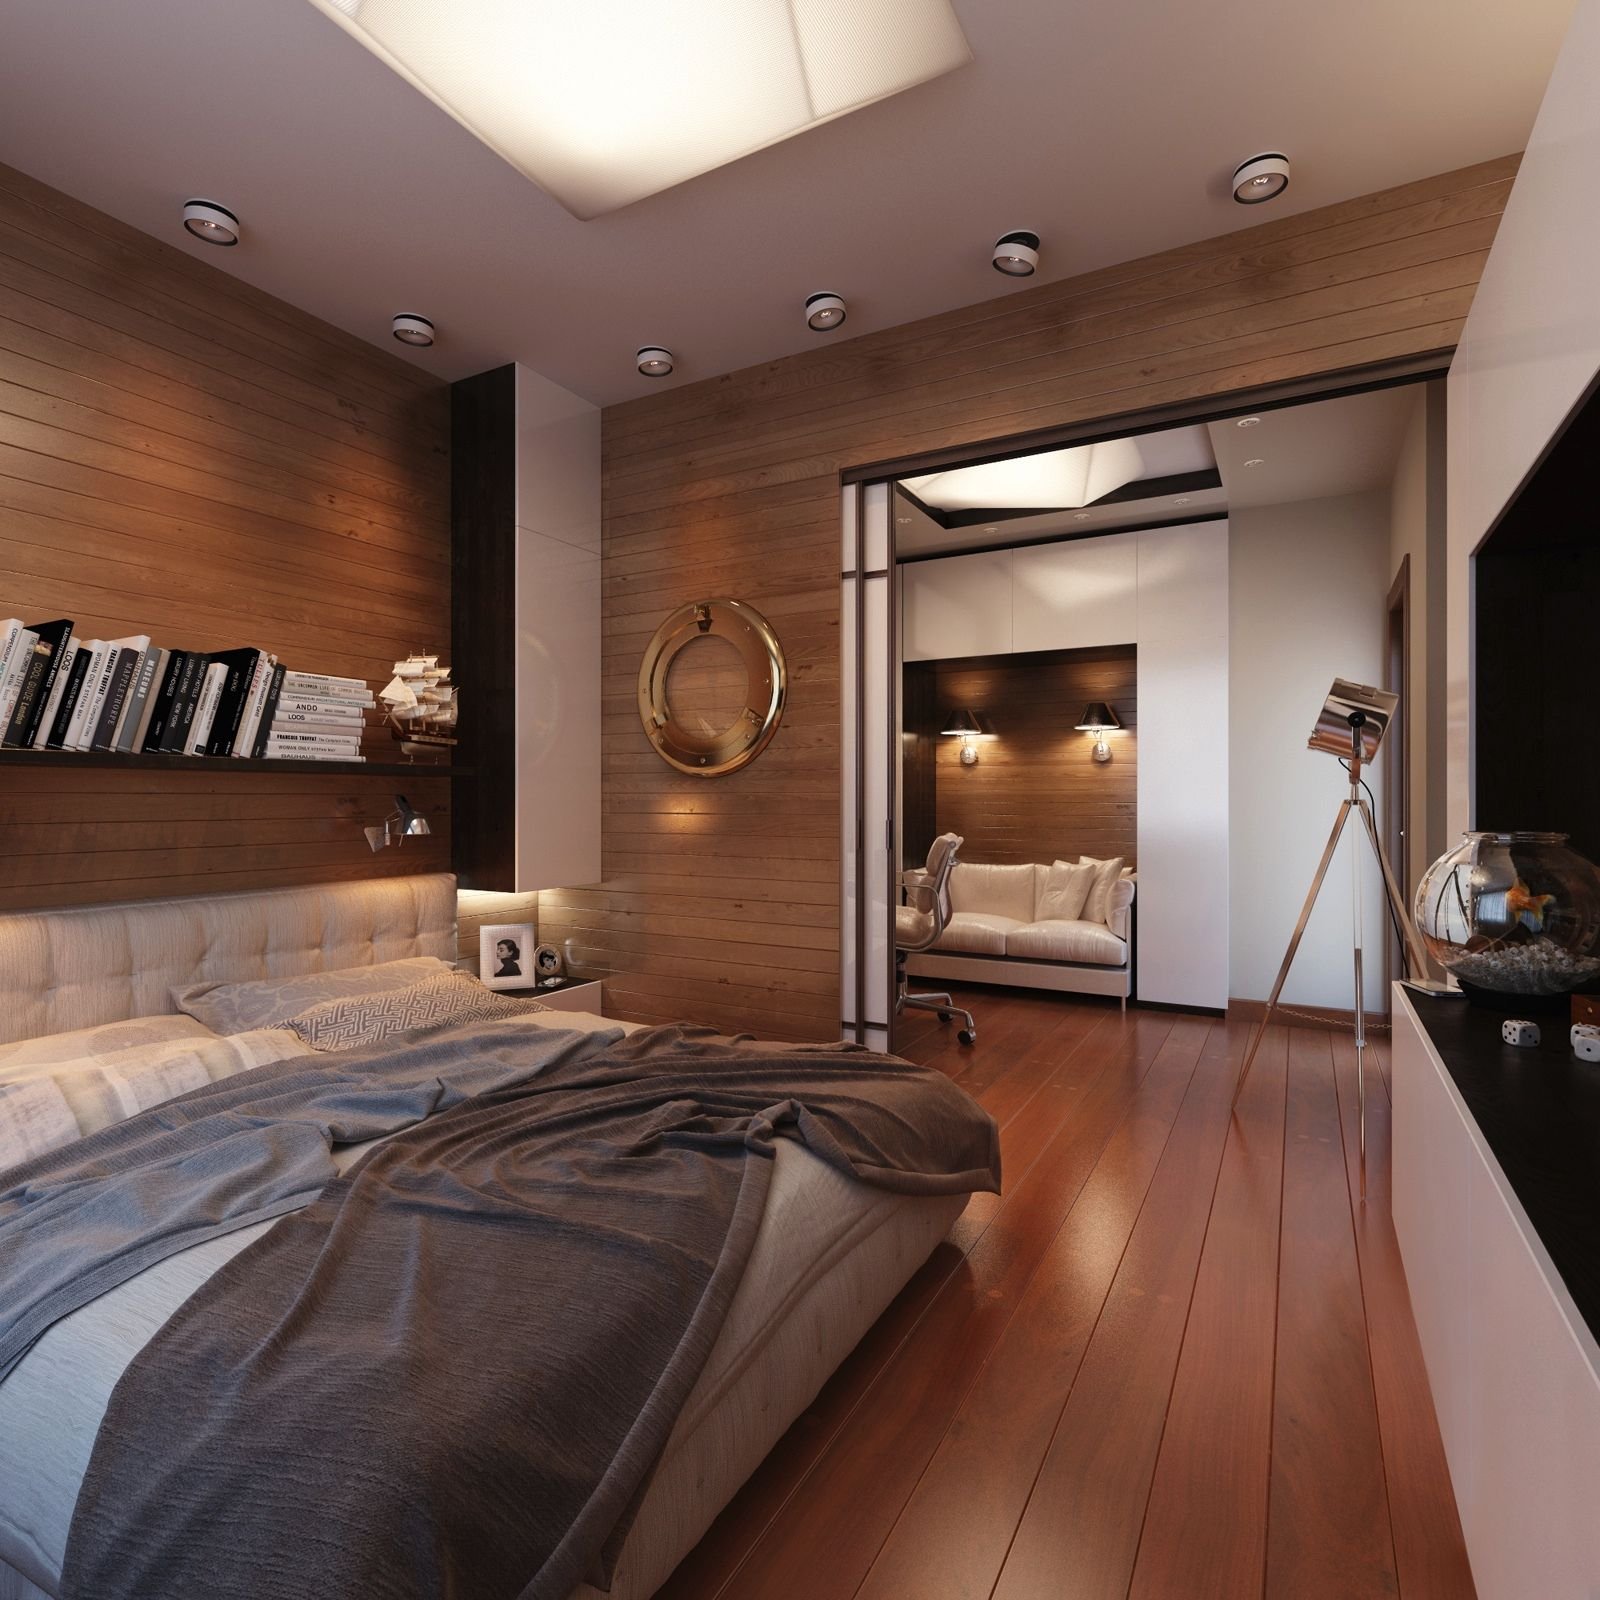 Интерьер и ремонт спальни: 30 фото модных идей для ремонта спальни — Roomble.com